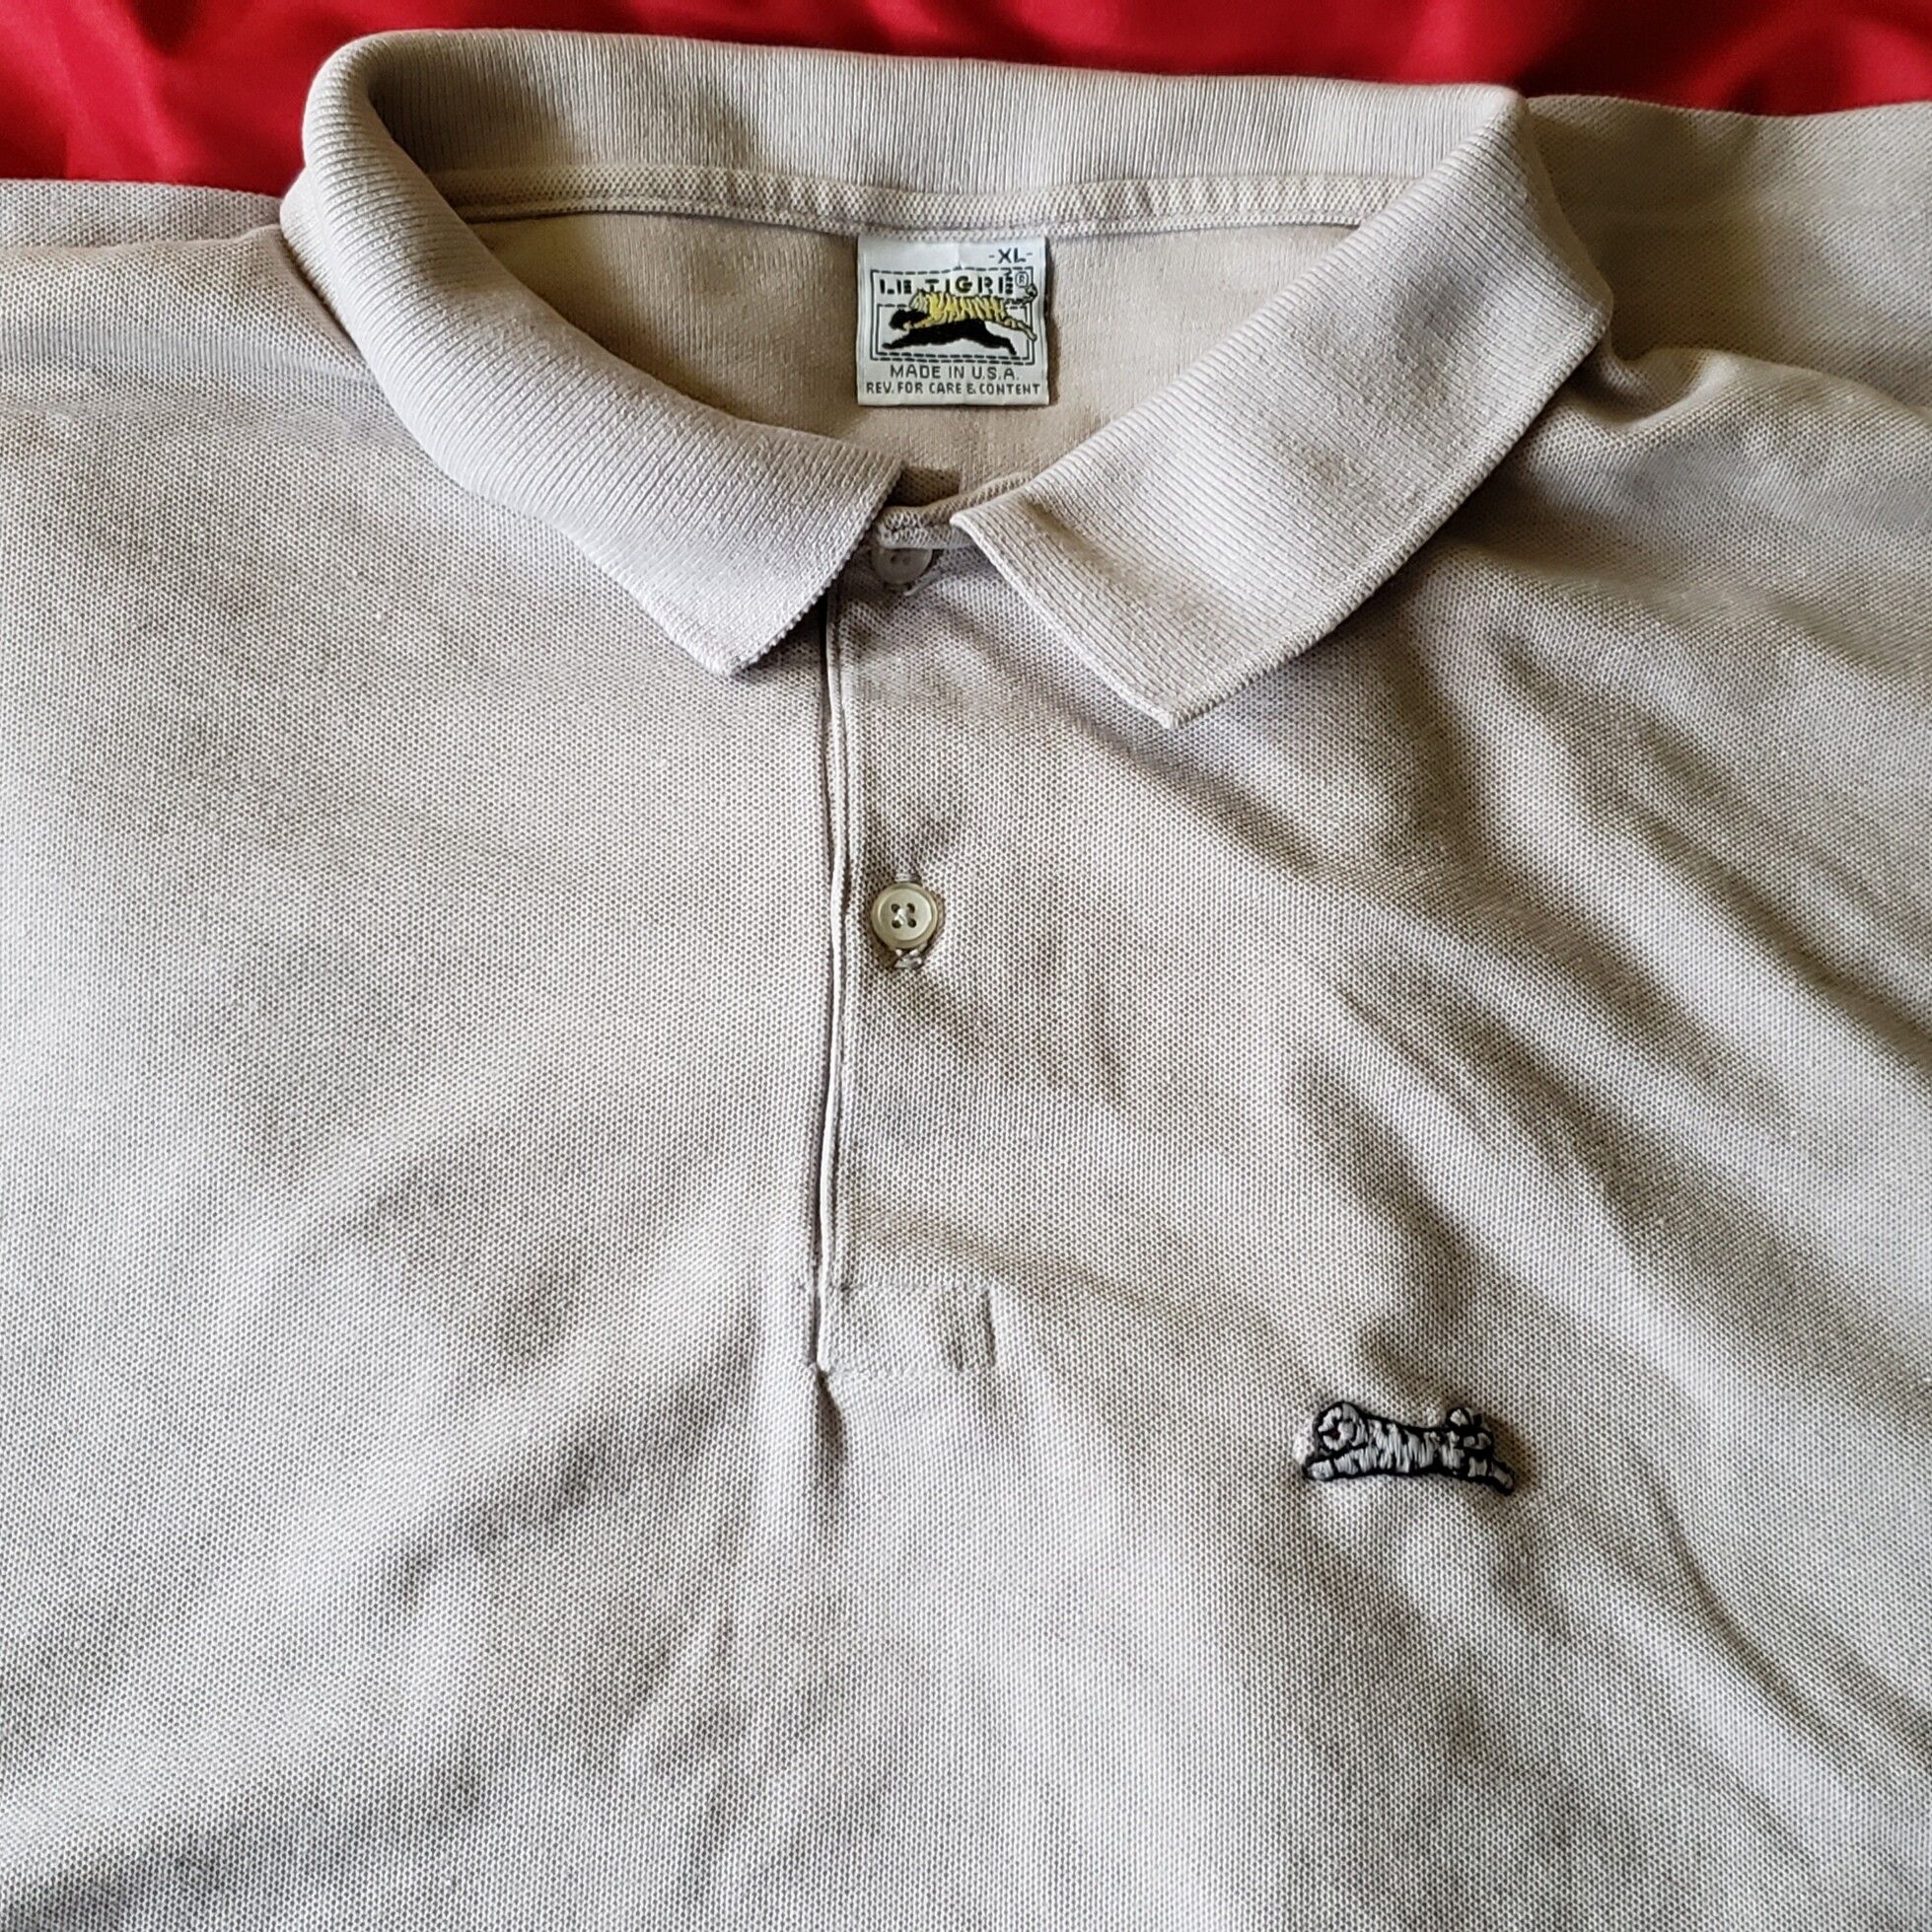 Le Tigre Rare Vintage LE TIGRE polo Shirt Made In Usa | Grailed